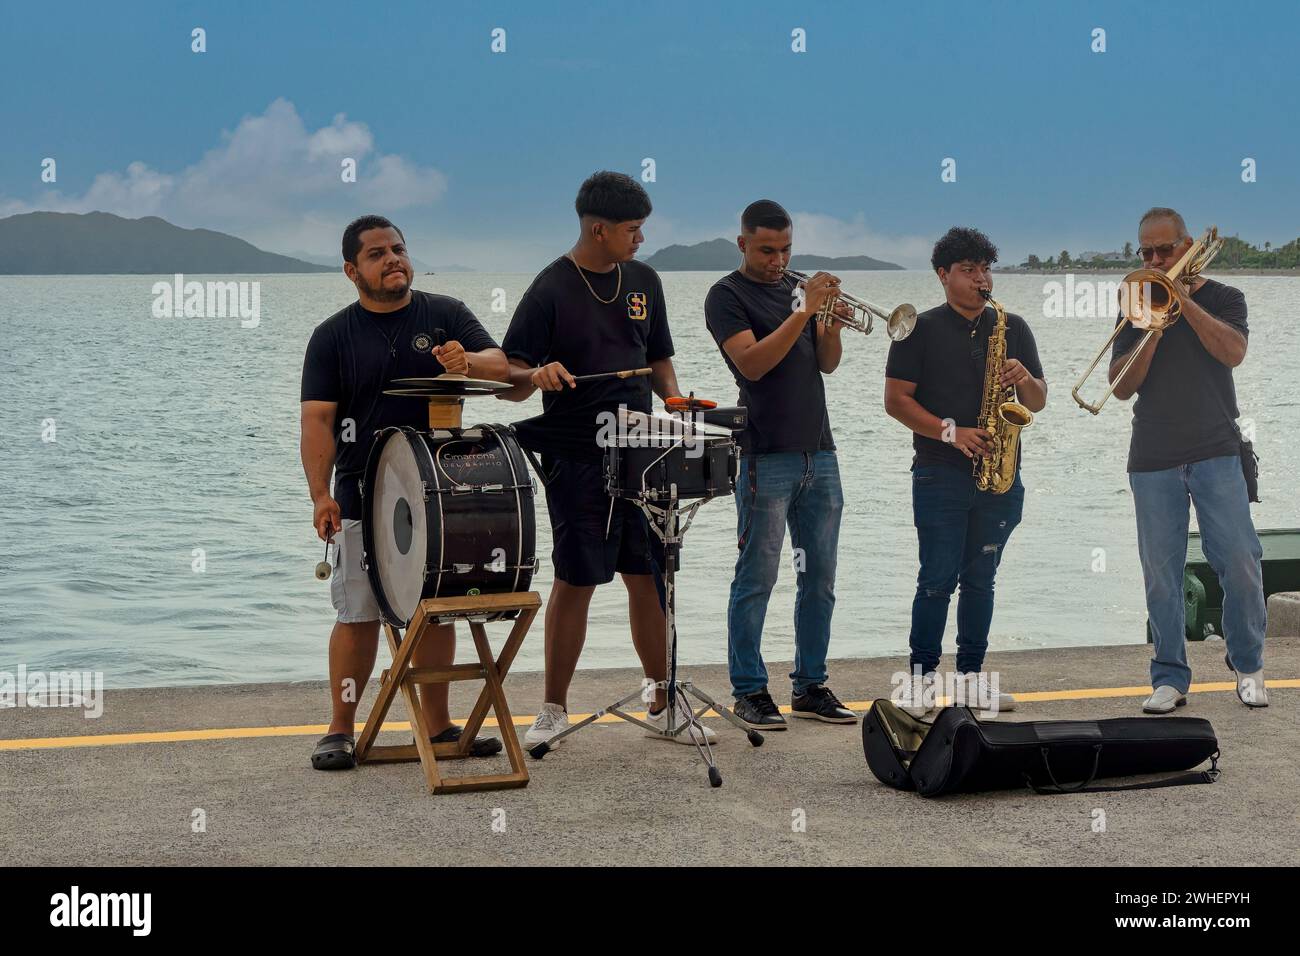 Costa Rica, Puntarenas - 22 luglio 20.23: Closep di cinque jazz band maschili che suonano sul molo sotto il cielo blu. L'acqua del Golfo di Nicoya nel retro. Foto Stock